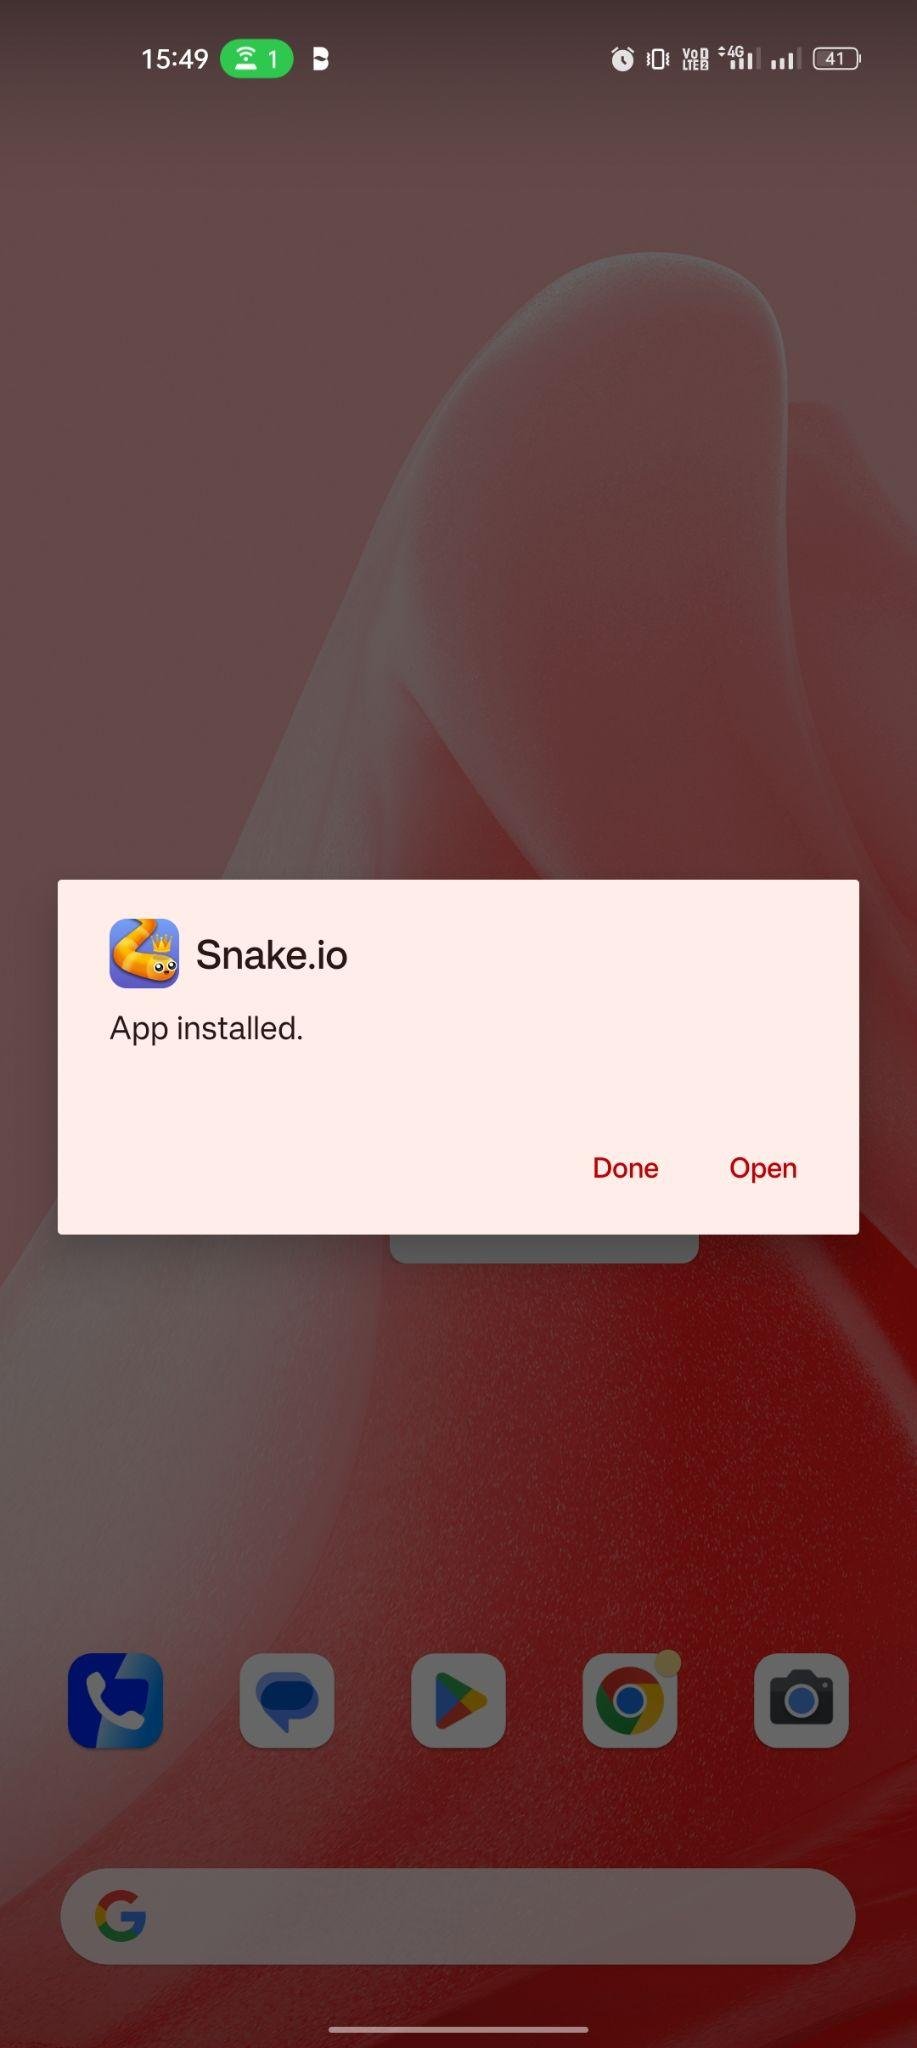 Snake.io apk installed